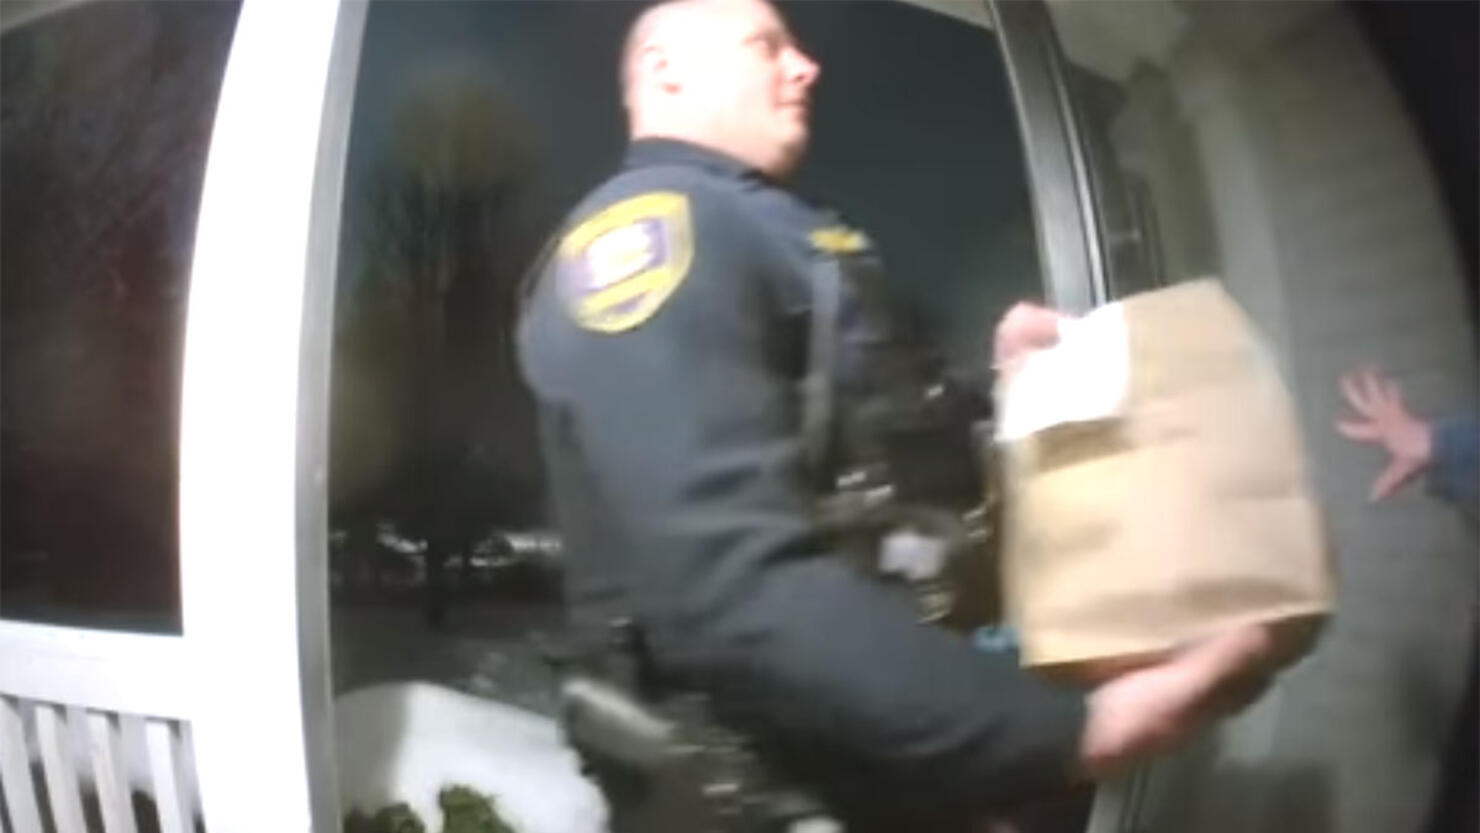 Police officer delivers DoorDash order